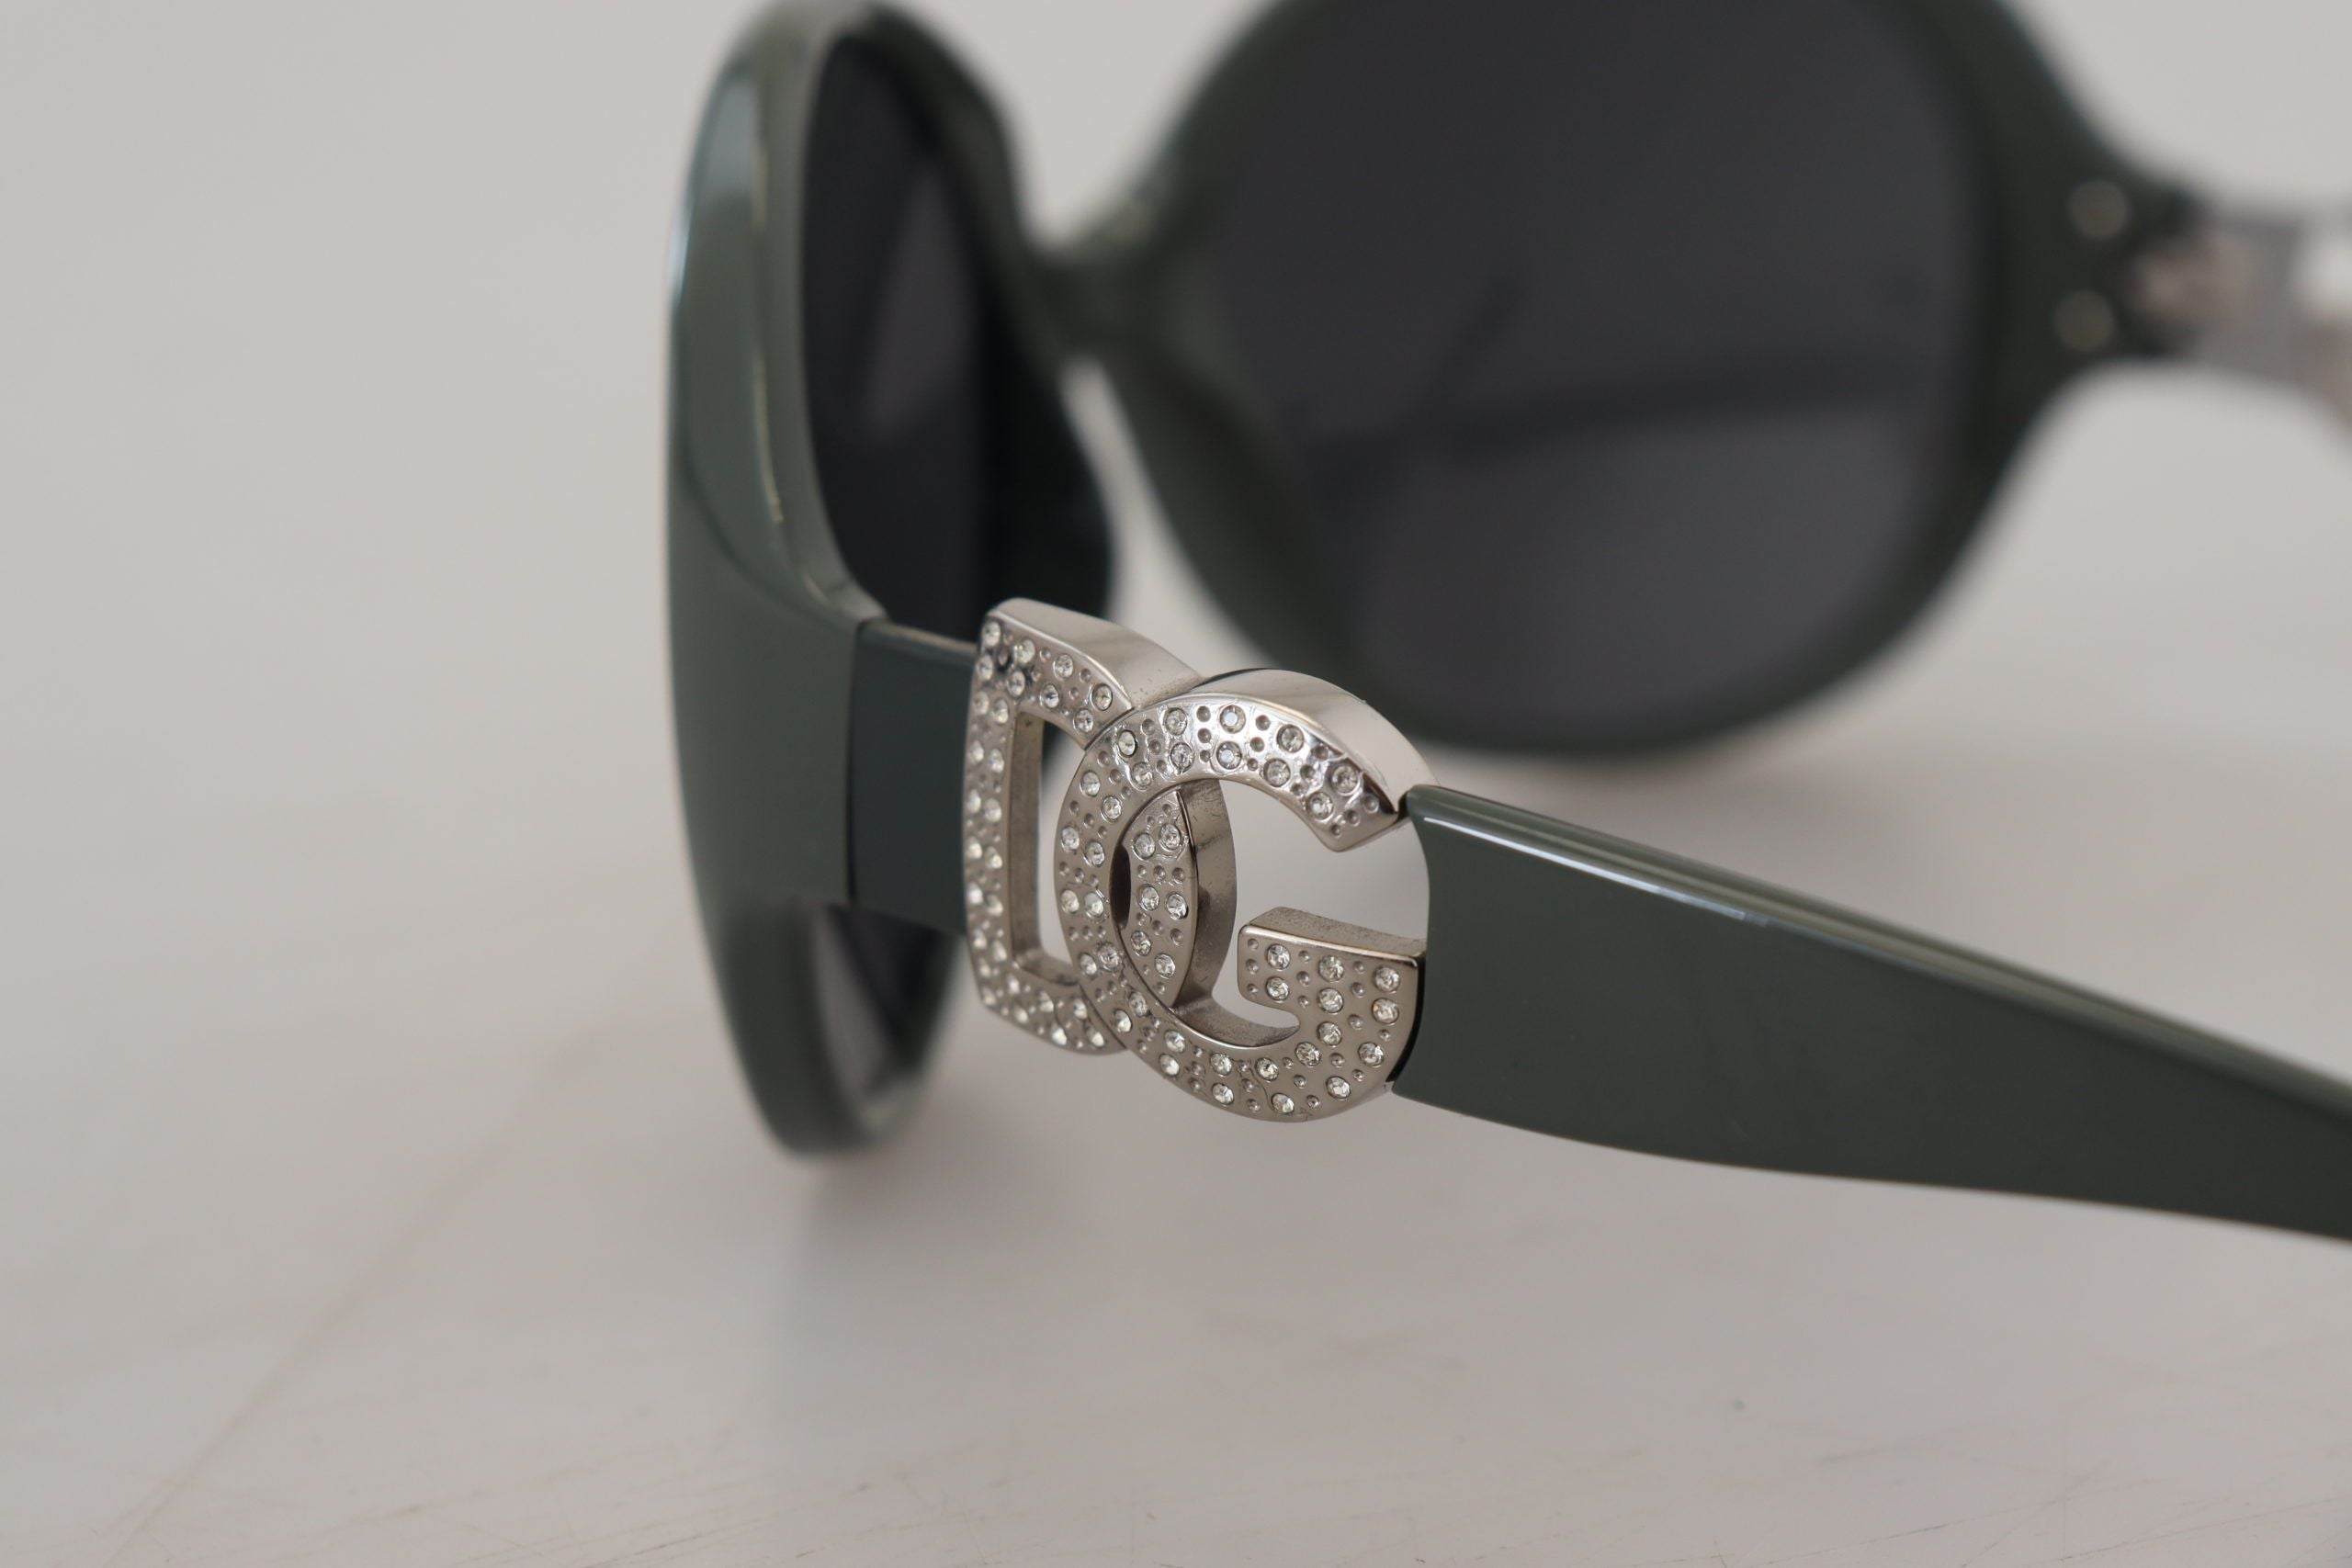 Green Plastic Frame Round DG Logo DG6030B Sunglasses